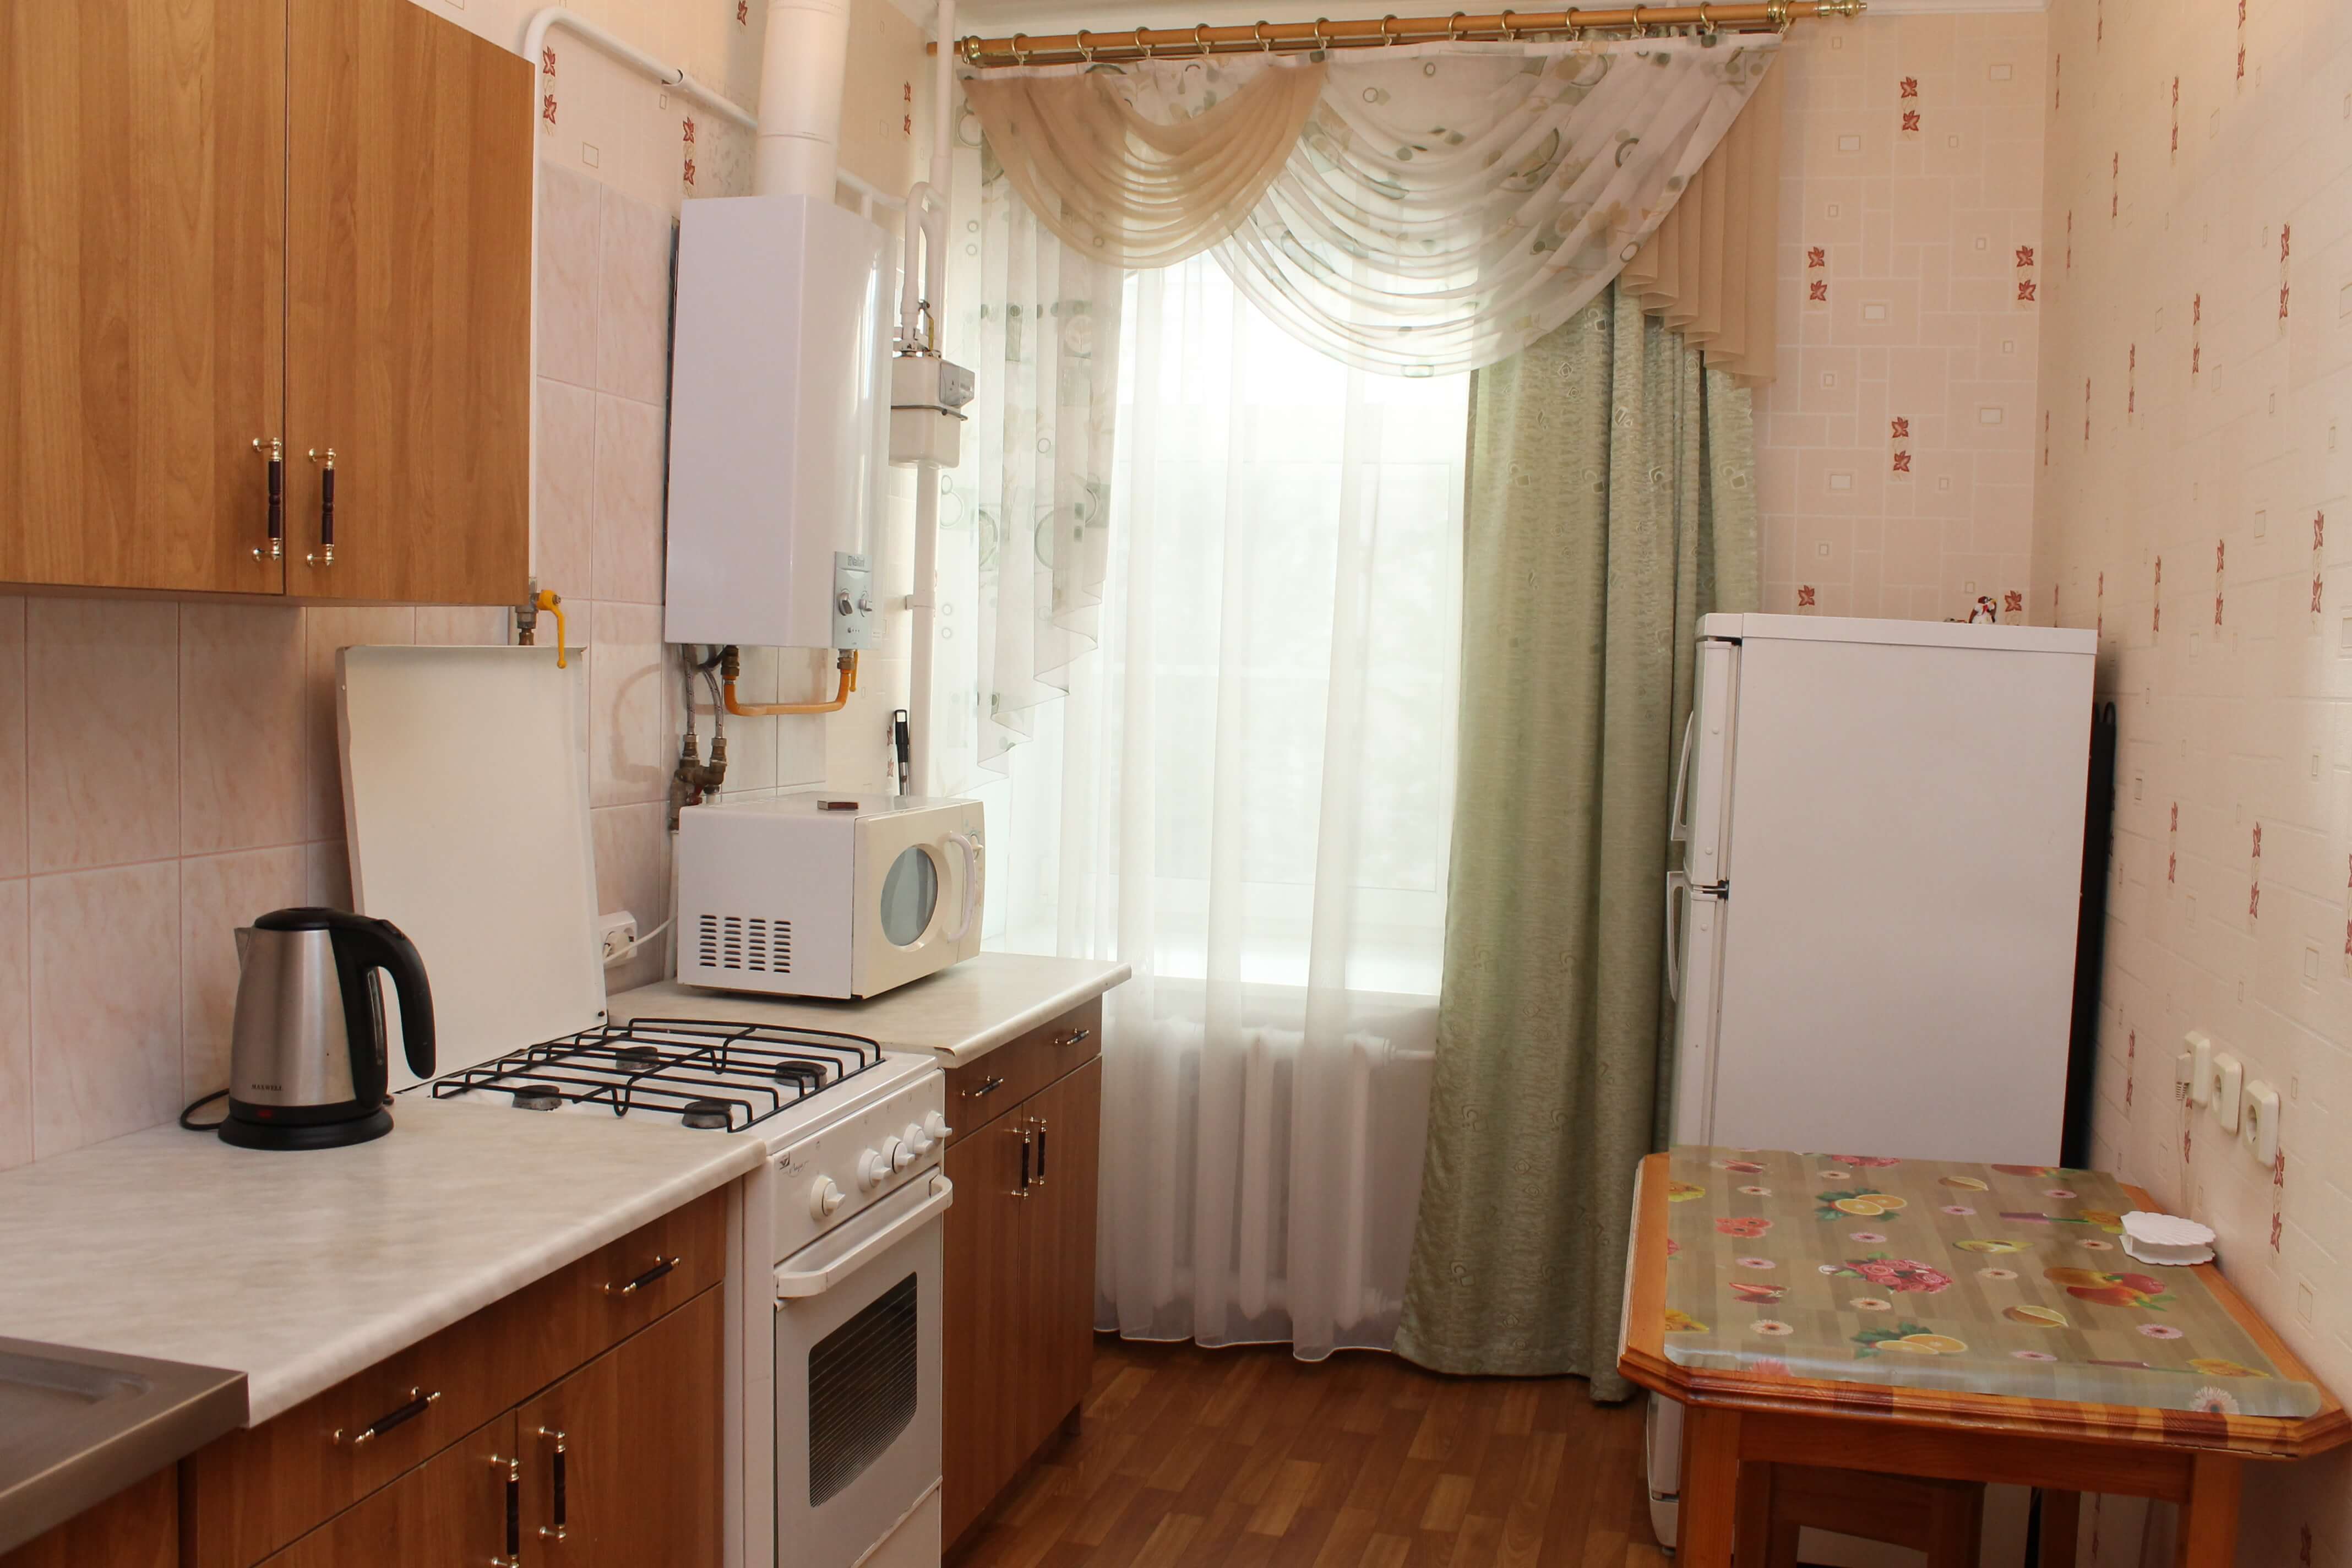 Однокомнатная квартира на ул.Черняховского 67 (38кв.м) до 2 гостей